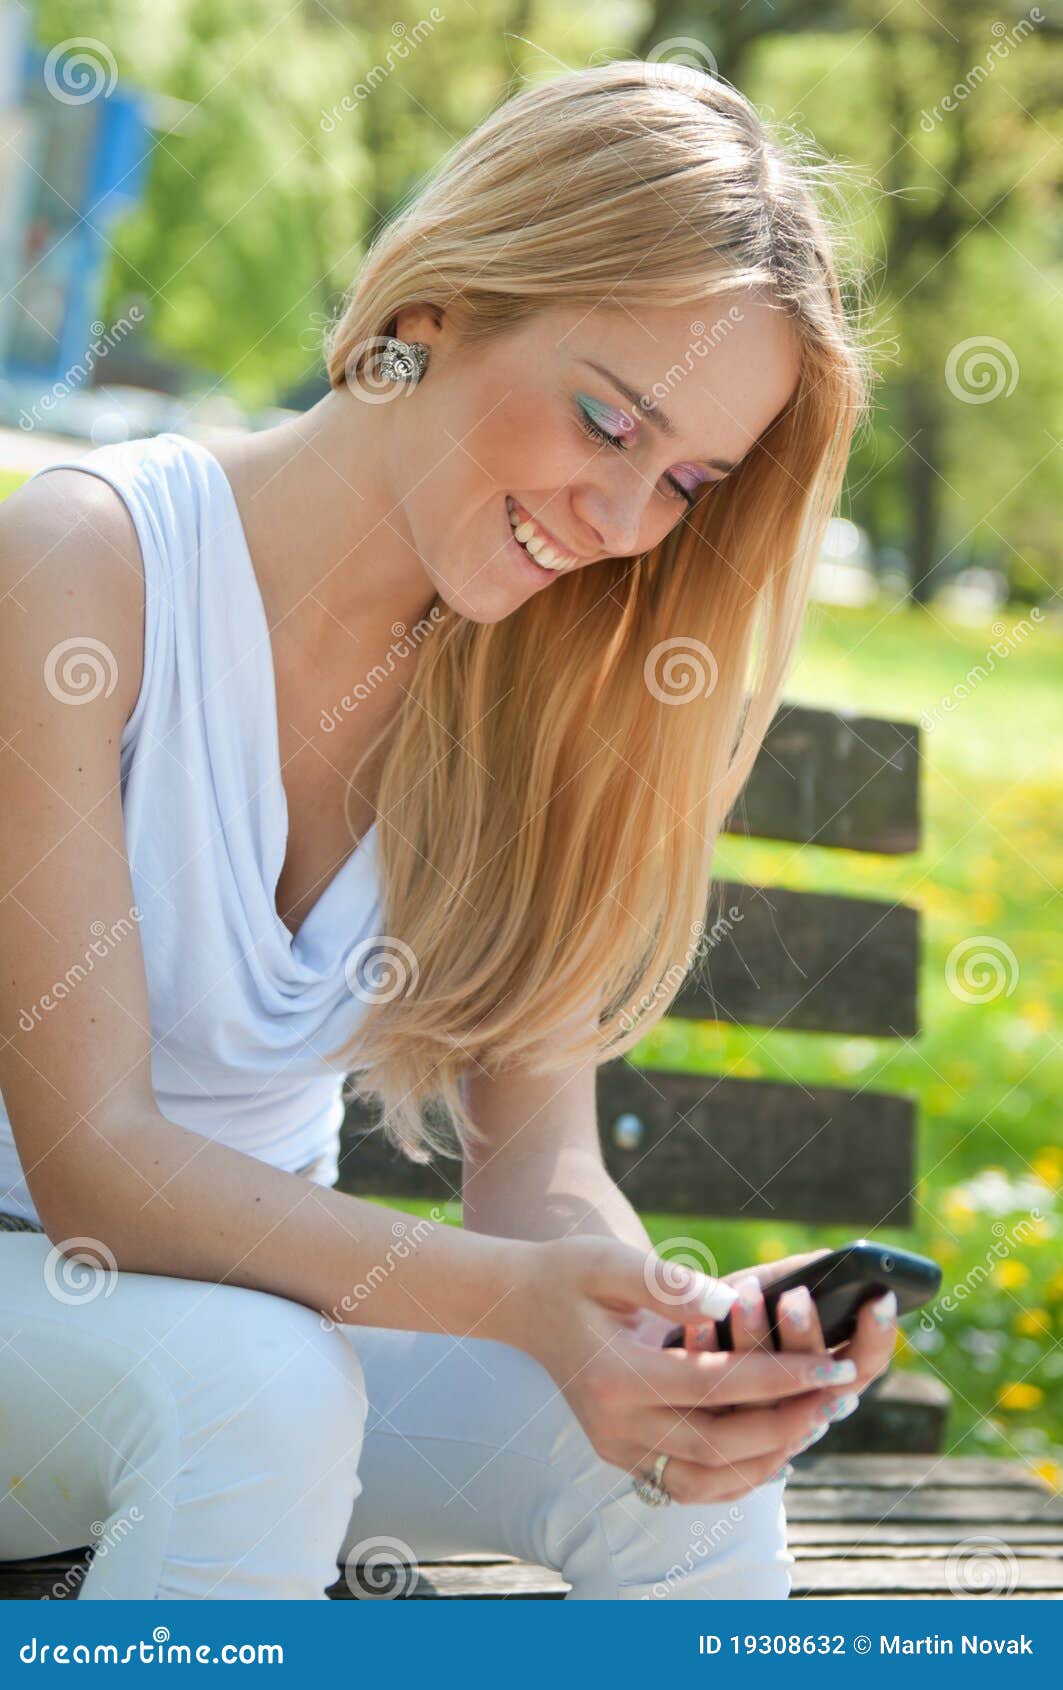 Mobiel communicatiemiddel - gelukkige tiener. Mobiel communicatiemiddel - glimlachende tiener die met smartphone in openlucht op zonnige dag werkt